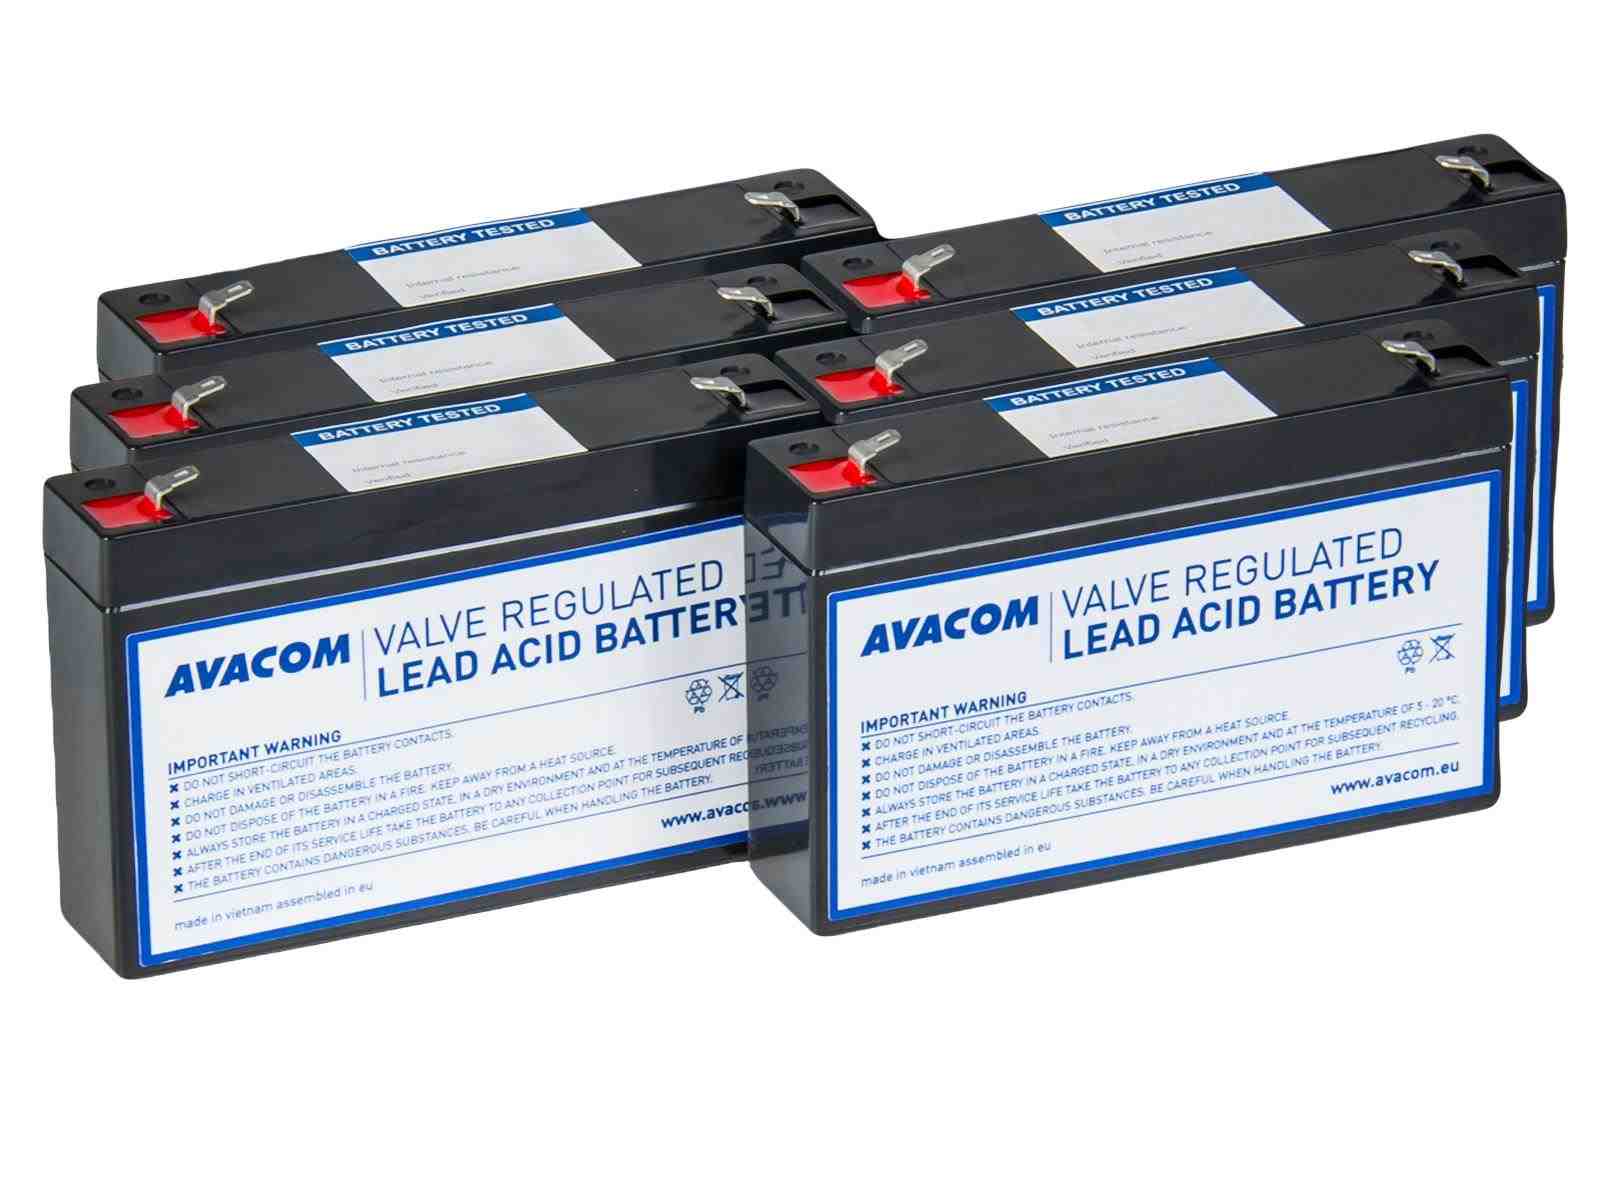 AVACOM RBC88 - kit pro renovaci baterie (6ks baterií)0 